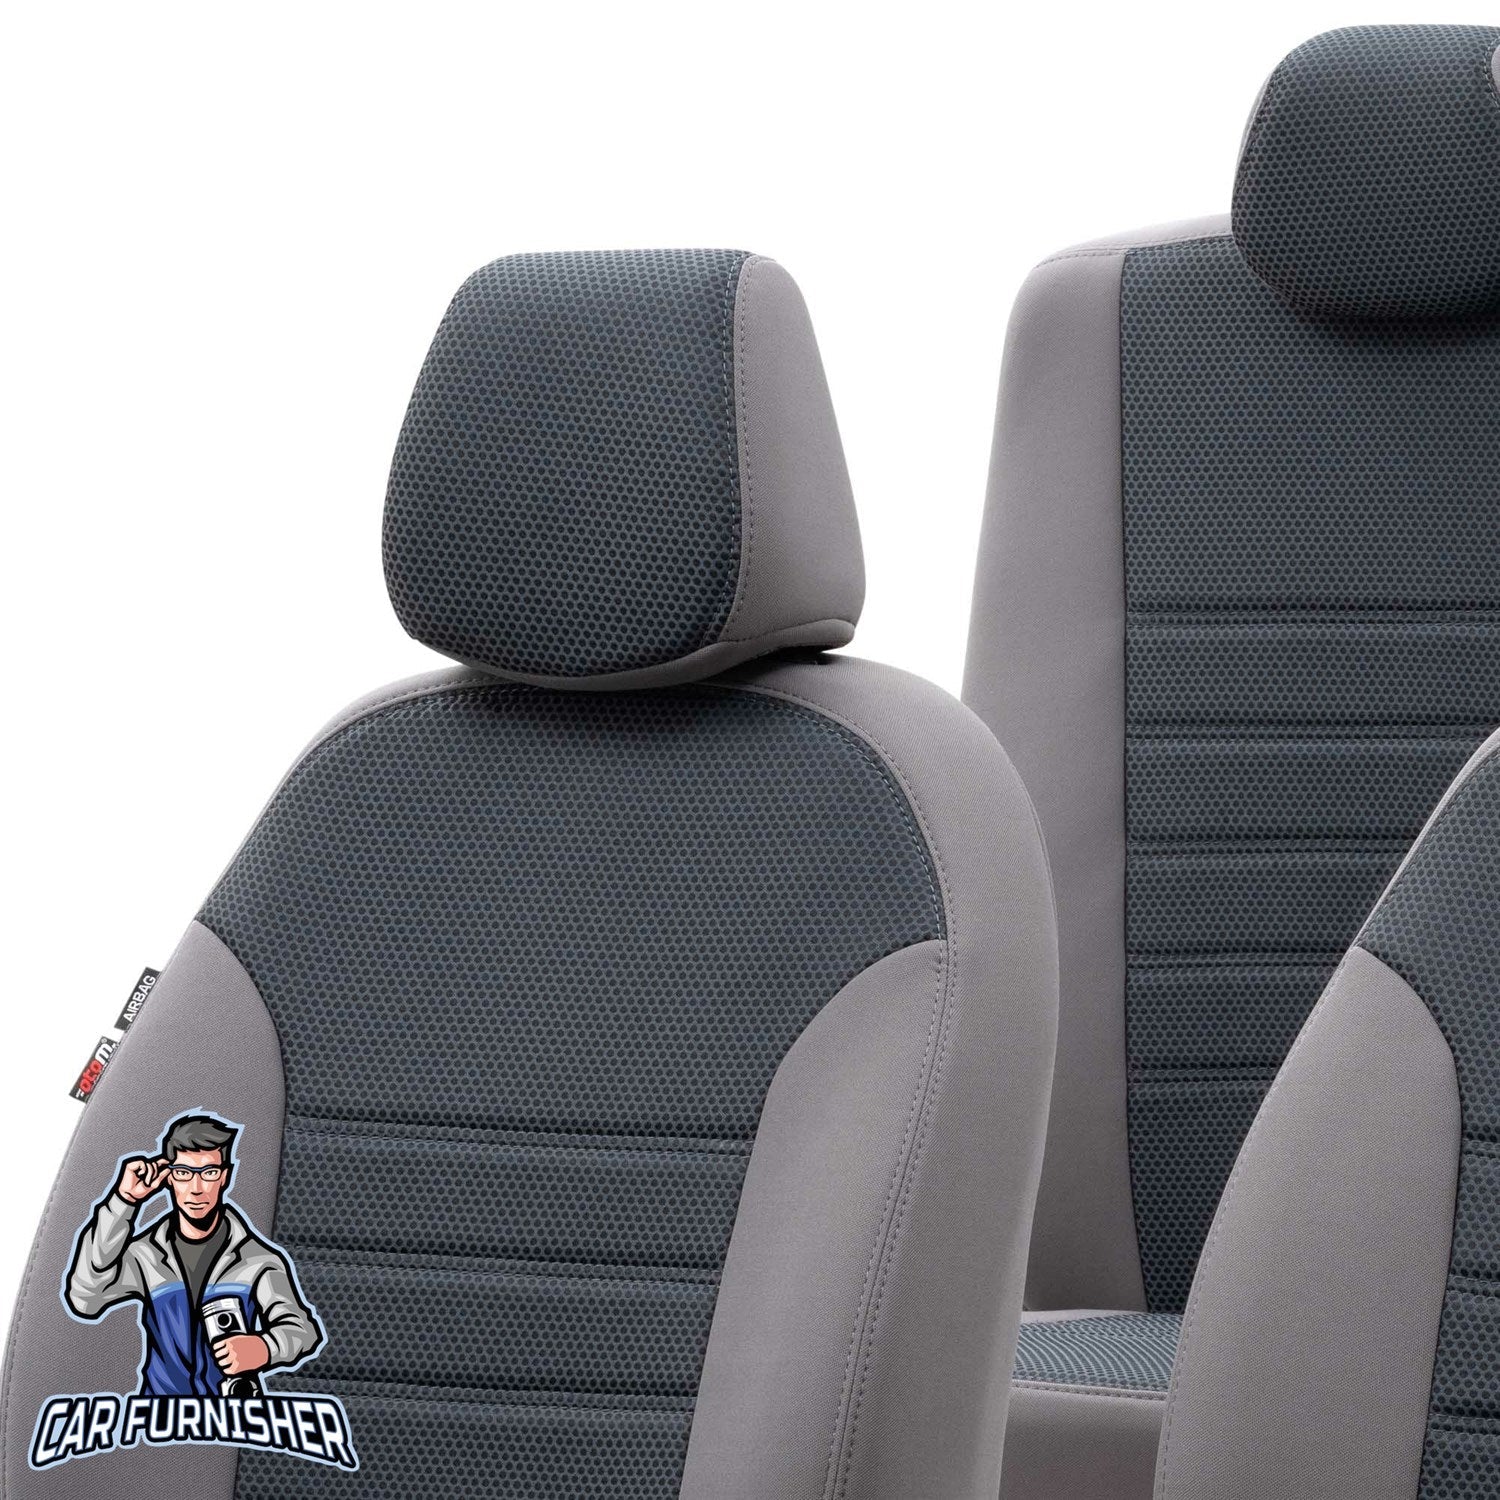 Kia Rio Seat Covers Original Jacquard Design Smoked Jacquard Fabric